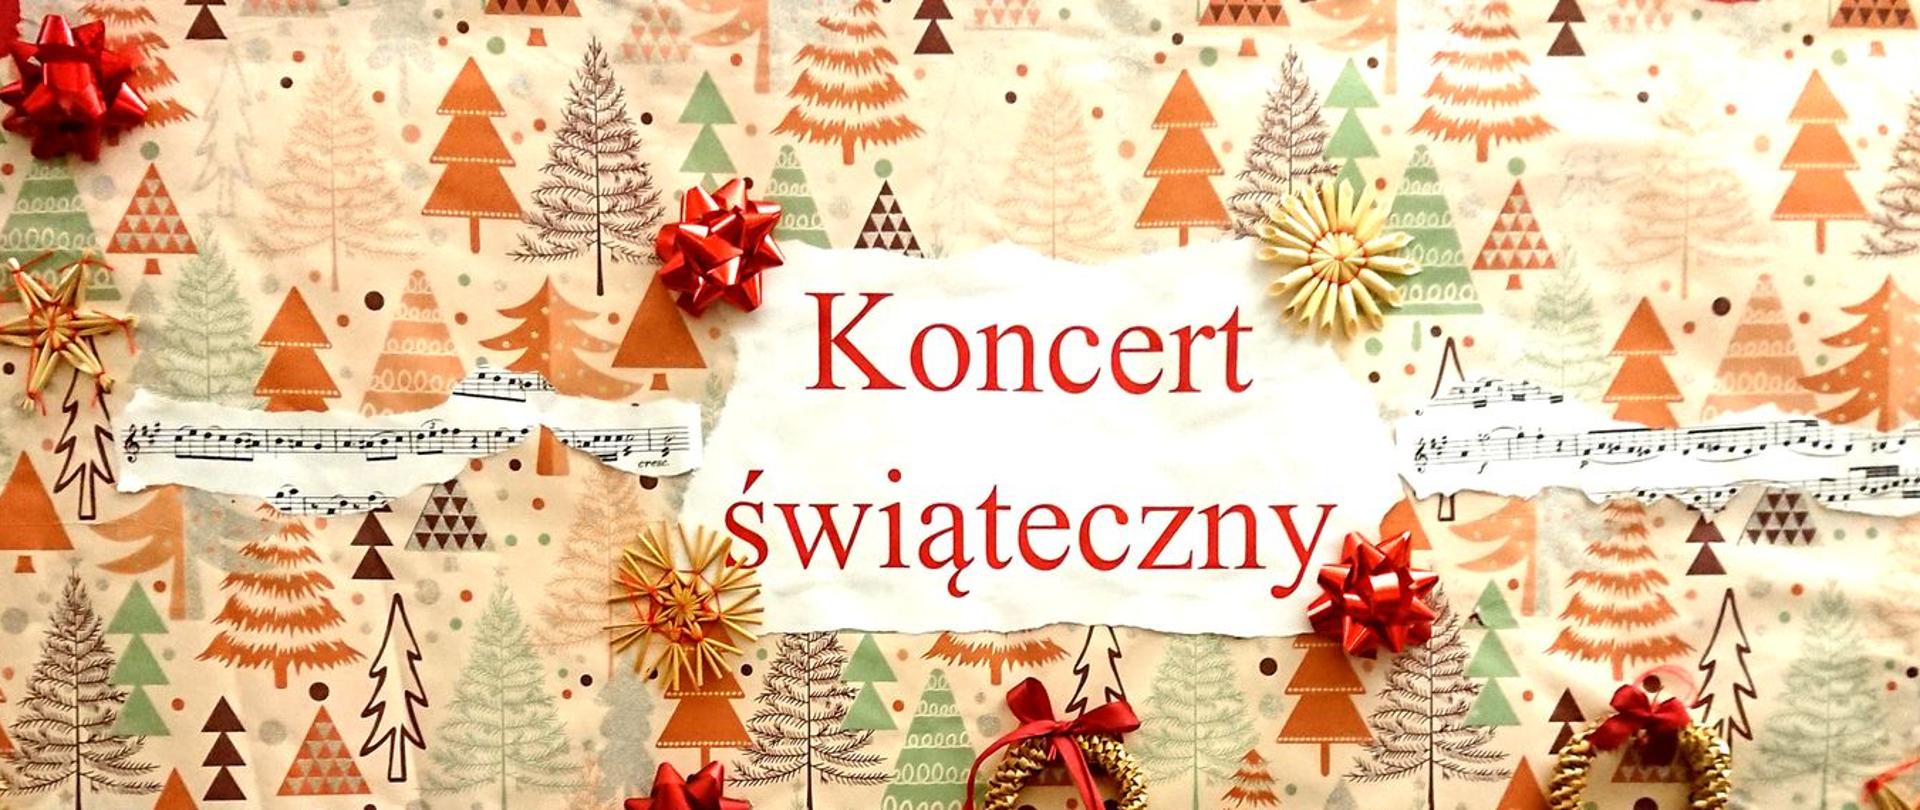 Zdjęcie przedstawia plakat koncertu świątecznego, w tle znajdują się różnokolorowe choinki oraz słomkowe gwiazdki i wianuszki.